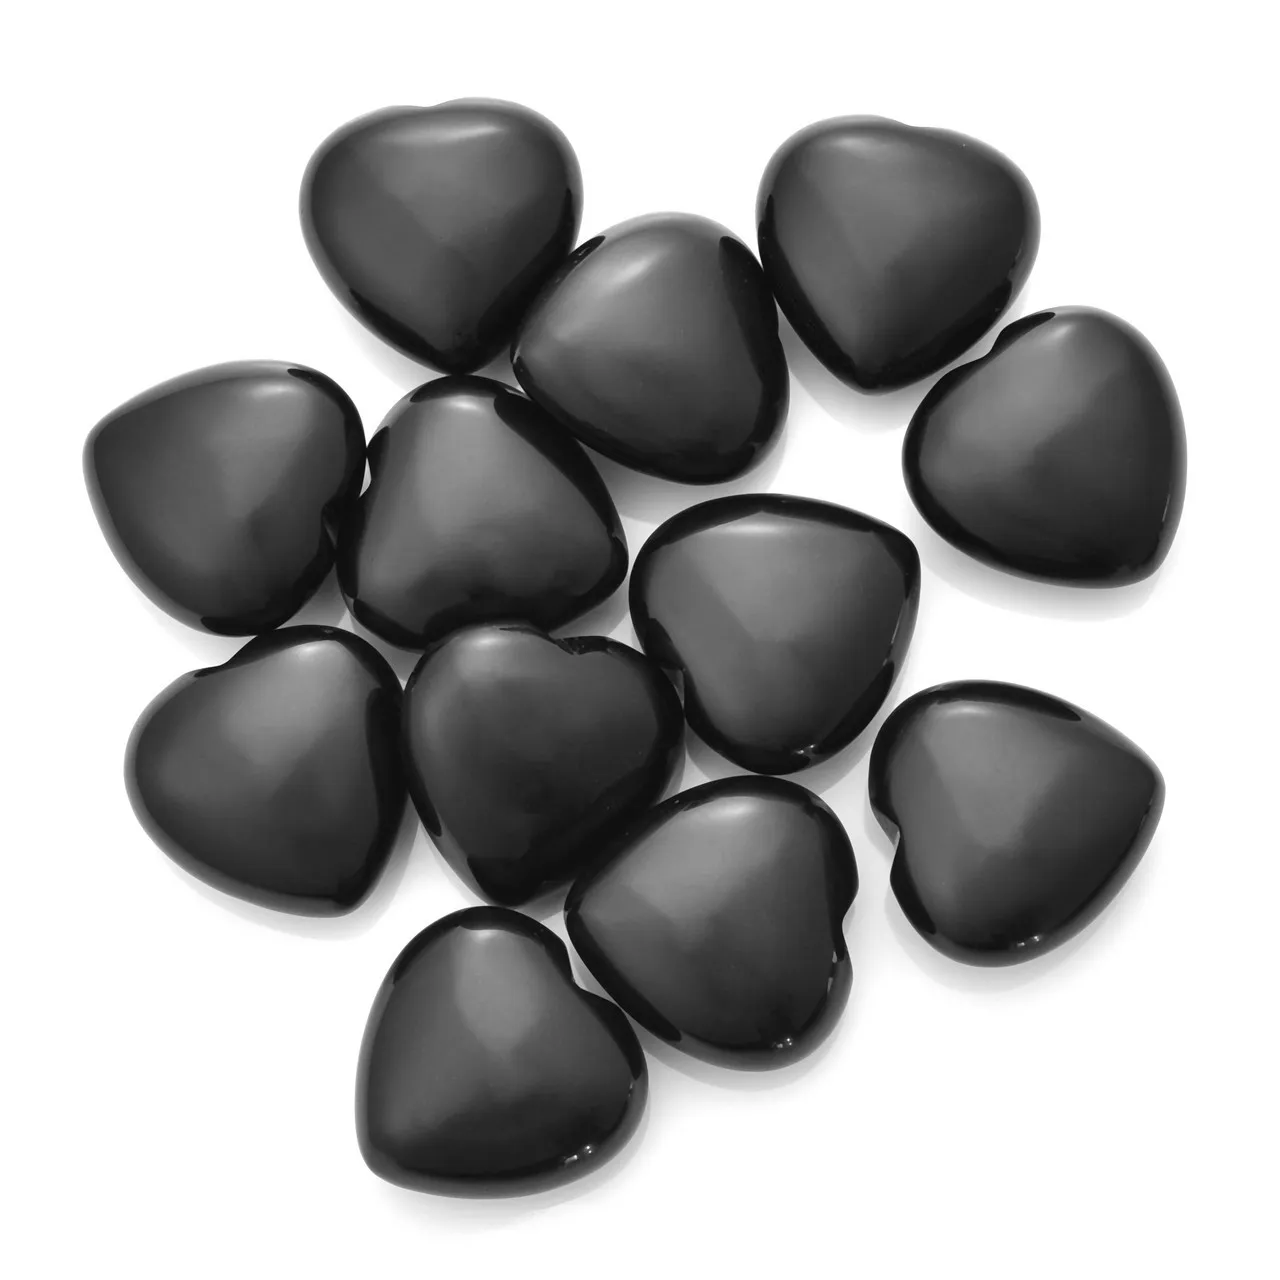 Natural Negro Obsidian Stone Ornamentos Esculpidos 25 * 10mm Coração Chakra Reiki Cura Quartz Mineral Tumbled Gemstones Hand Home Decor